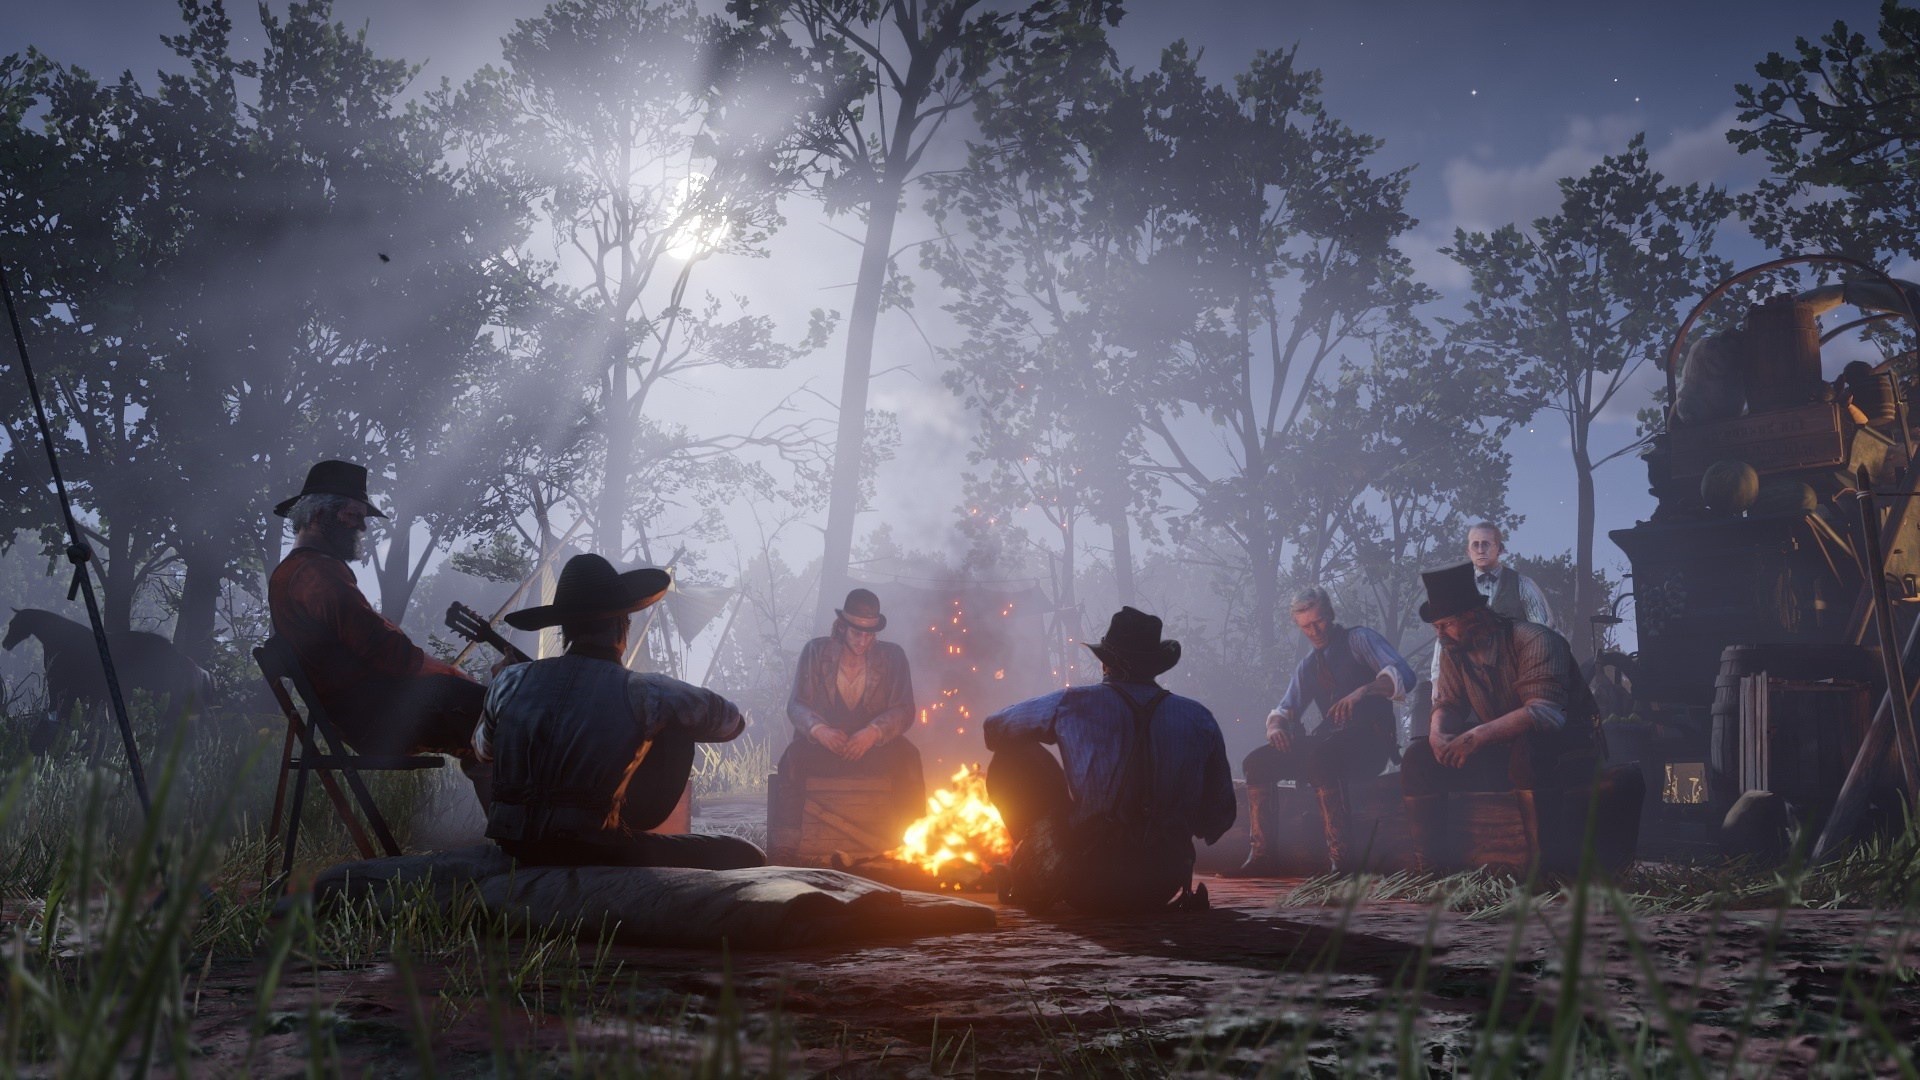 مجموعة في الغابة يجلسون حول النار